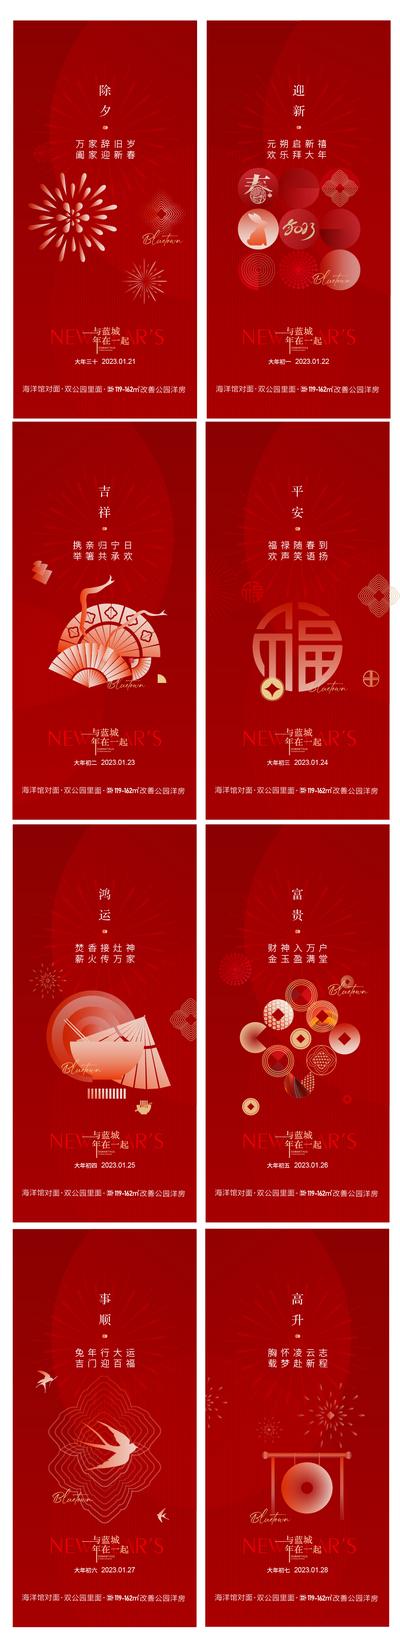 南门网 广告 海报 节日 新年 过年 除夕 初一 初二 初六 年俗 系列 红金